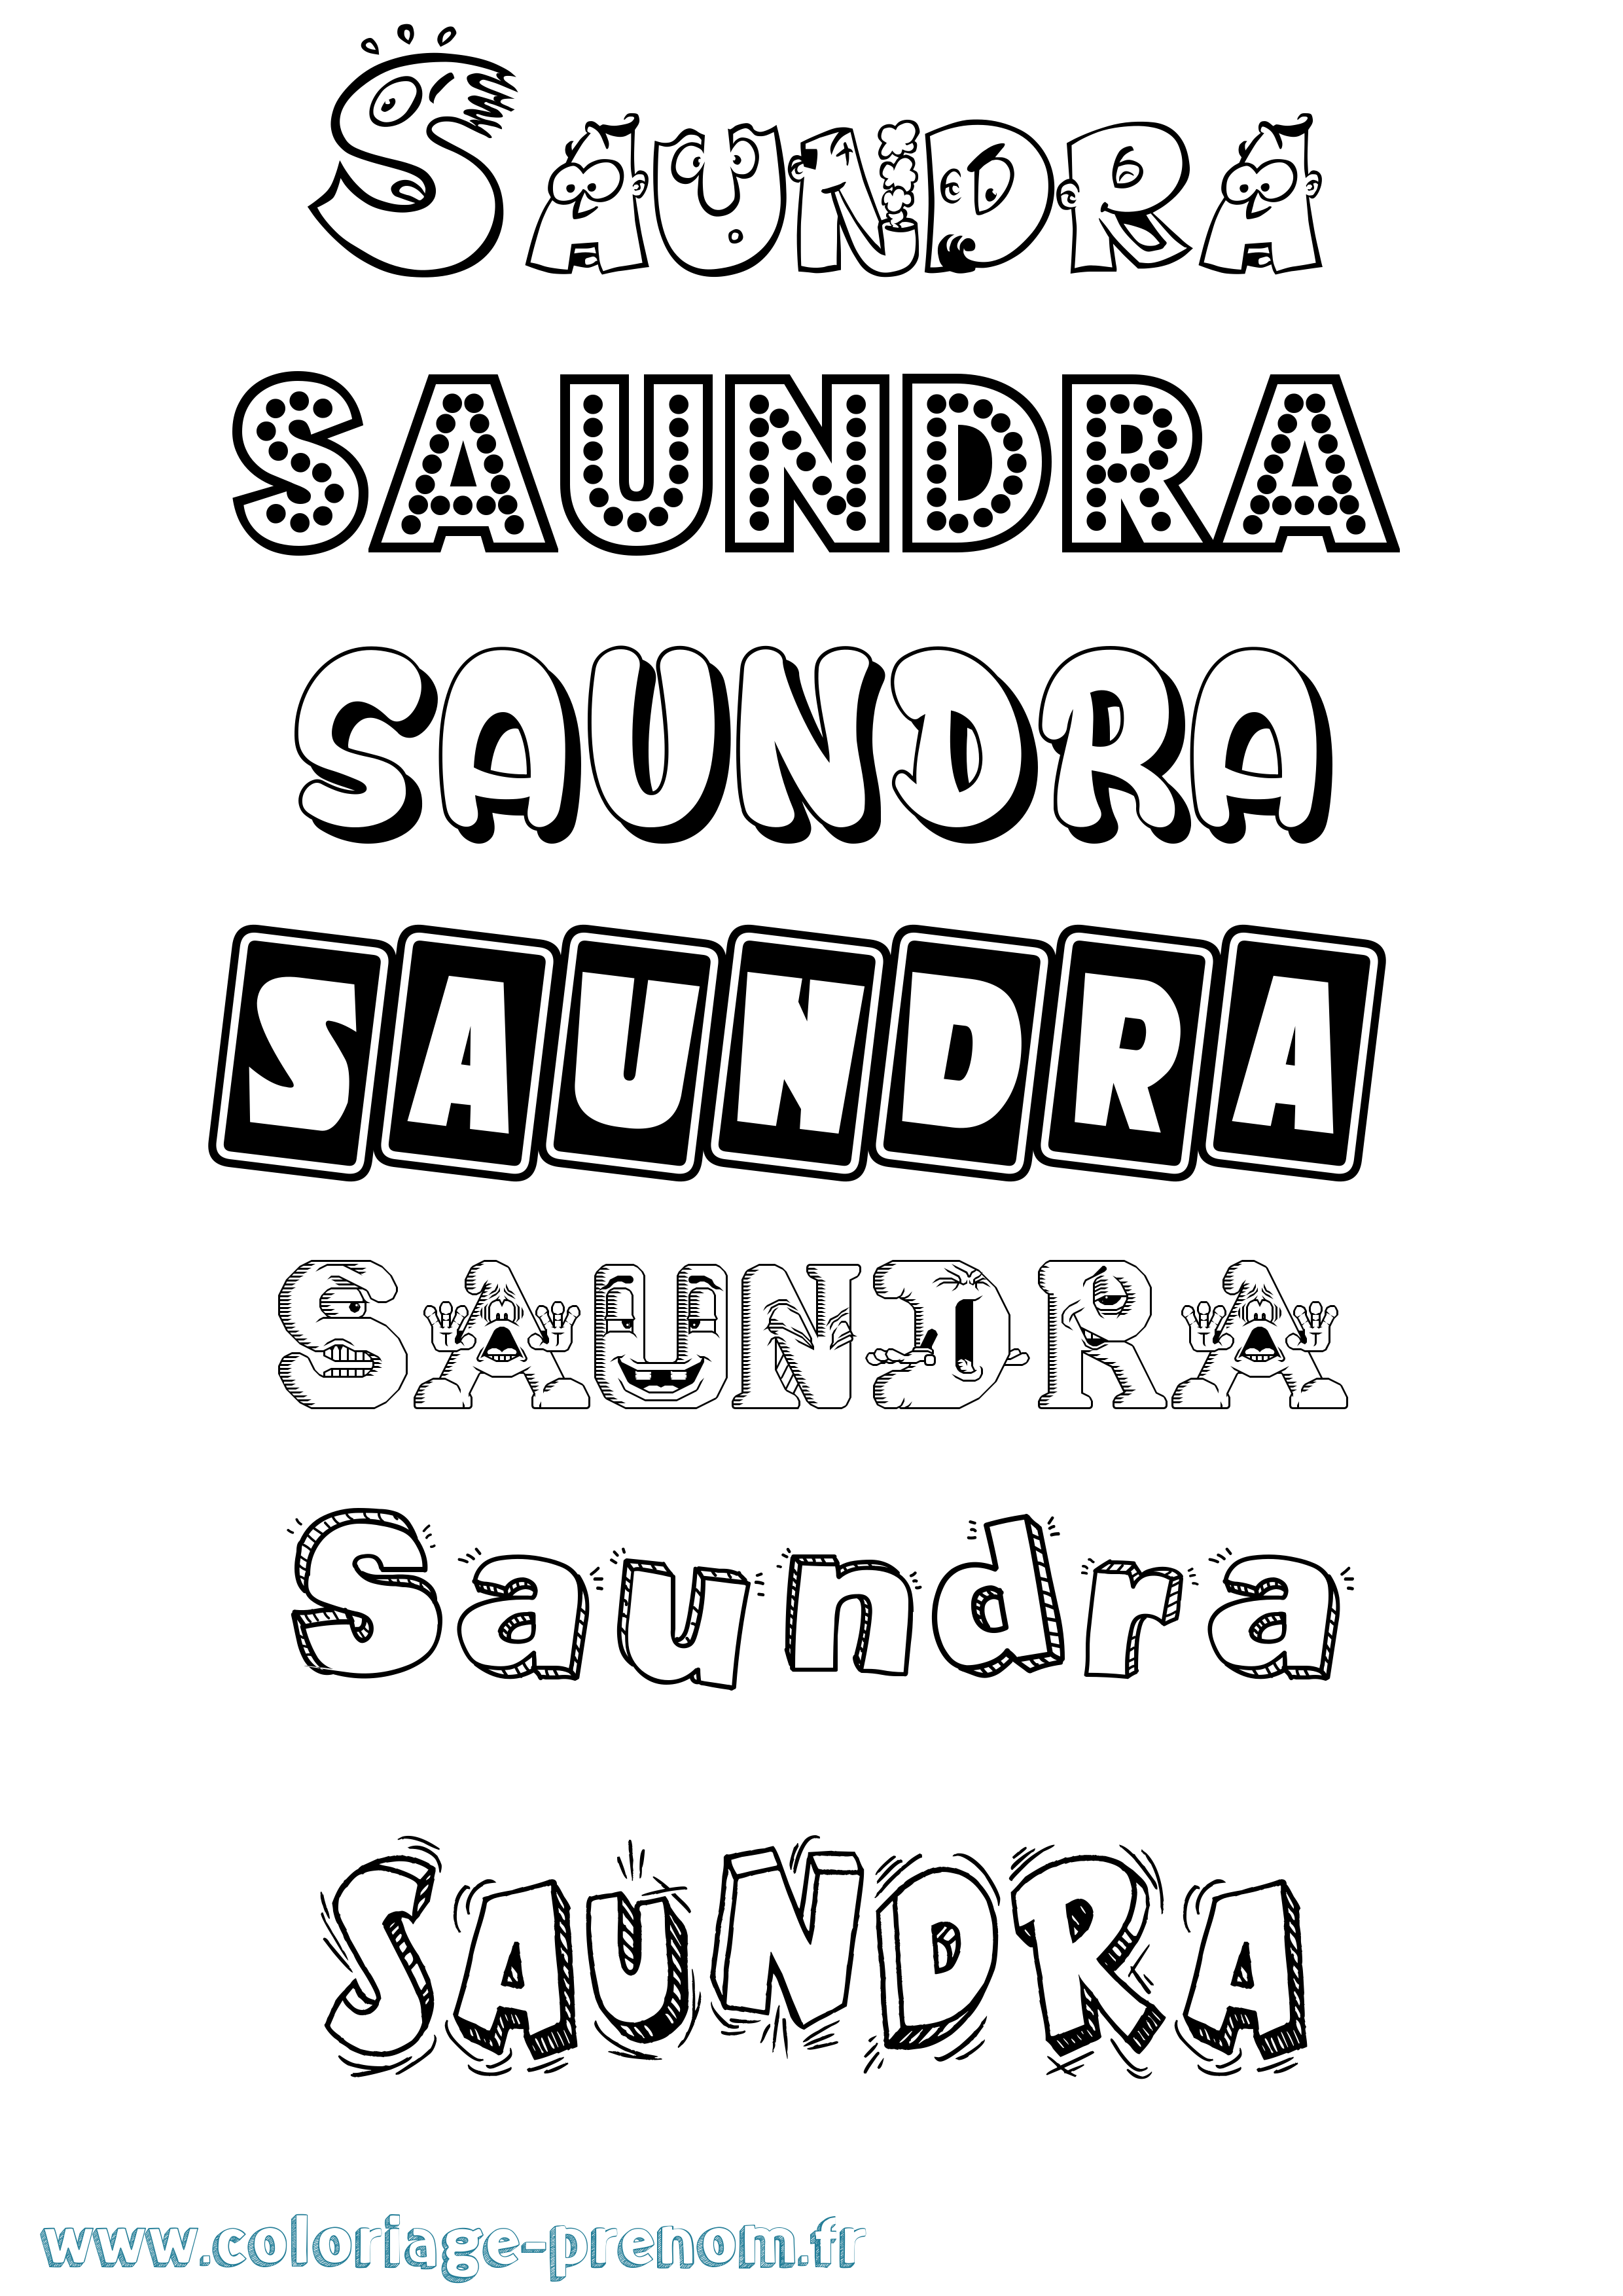 Coloriage prénom Saundra Fun